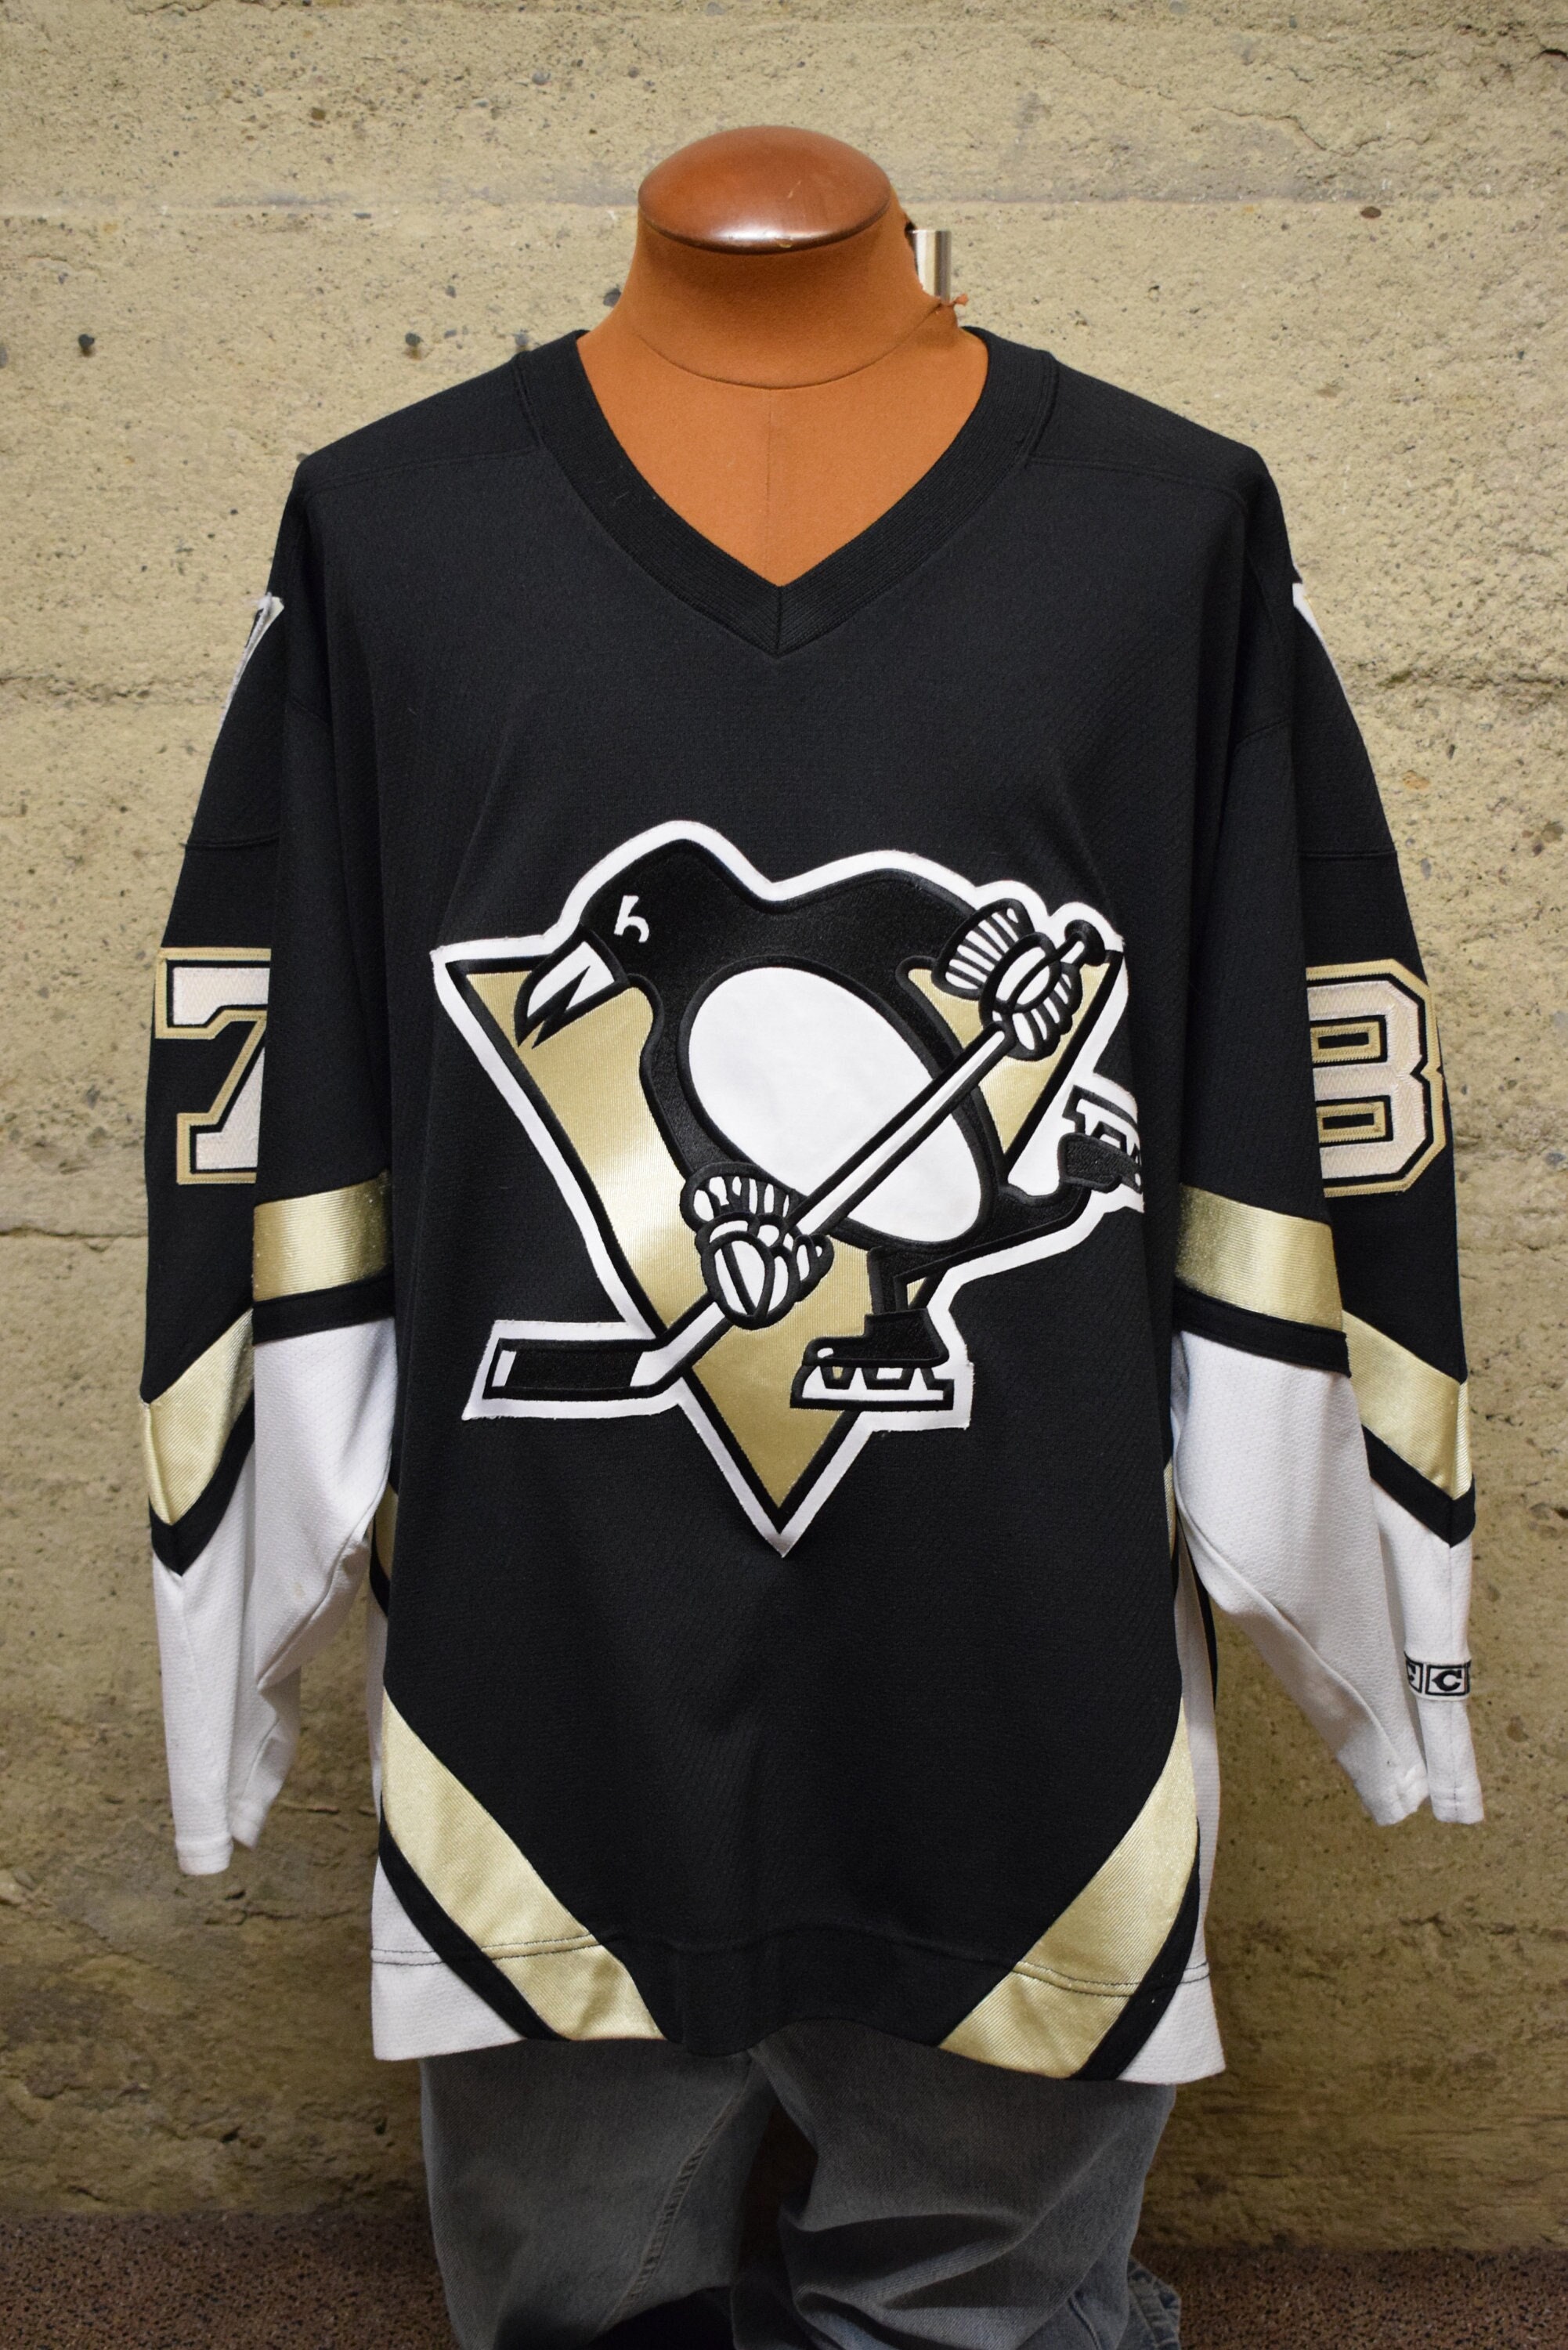 Sidney Crosby Jerseys, Sidney Crosby Shirts, Apparel, Gear